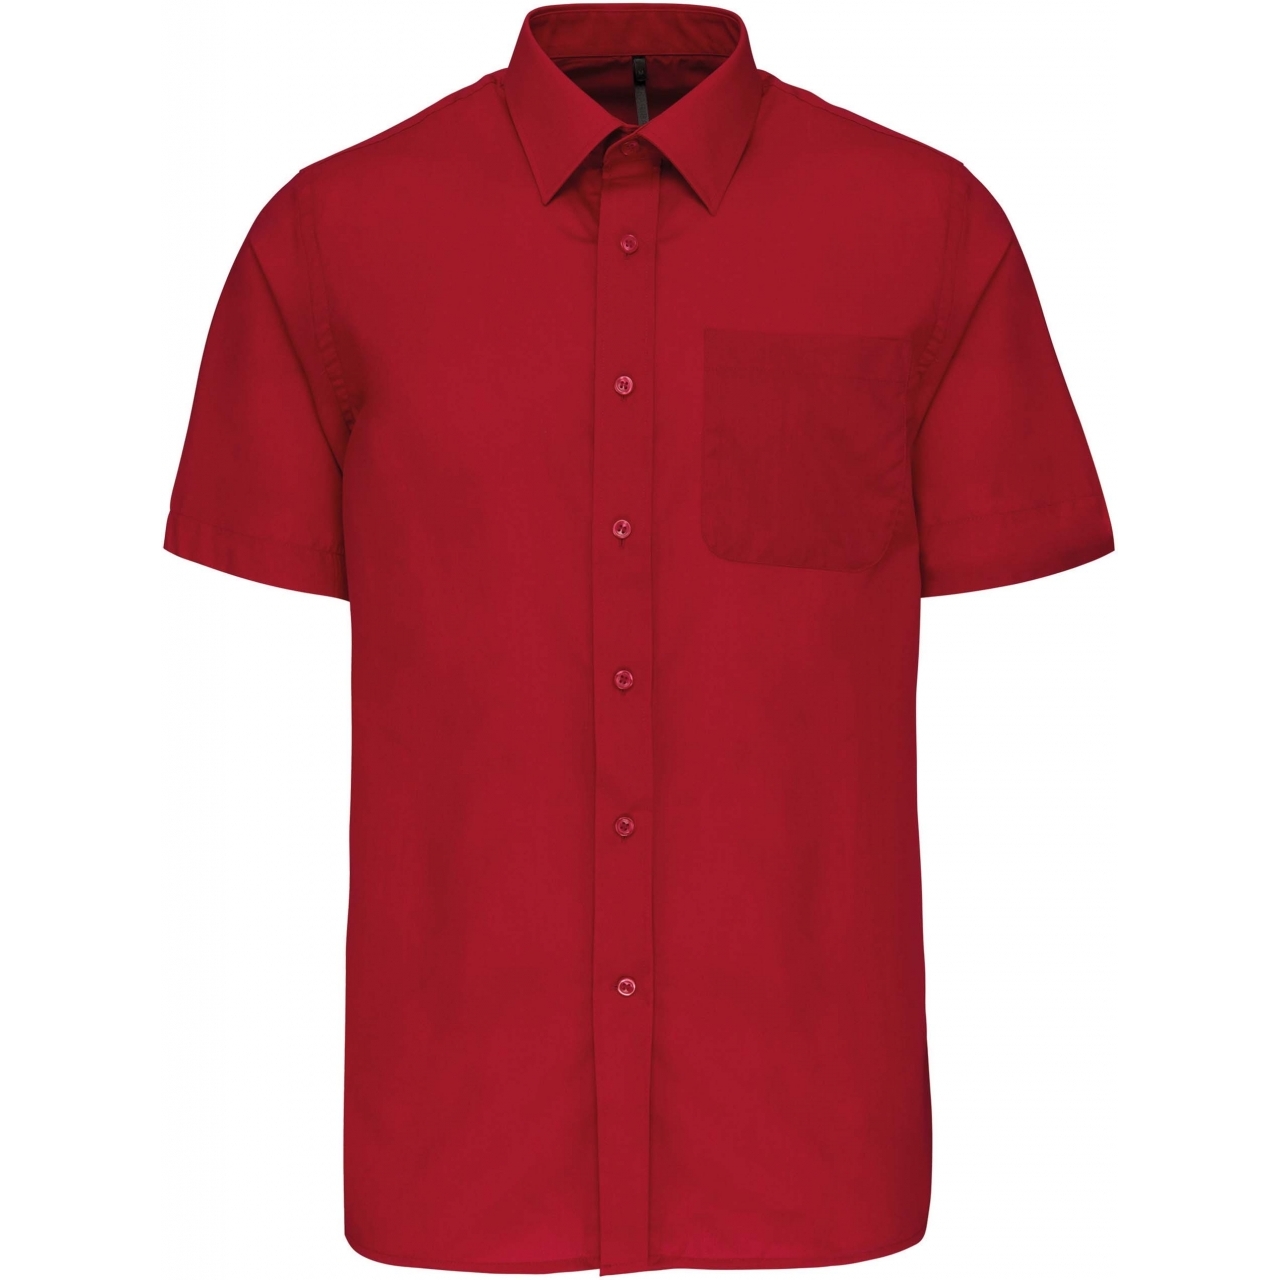 Pánská košile s krátkým rukávem Kariban ACE - červená, XL